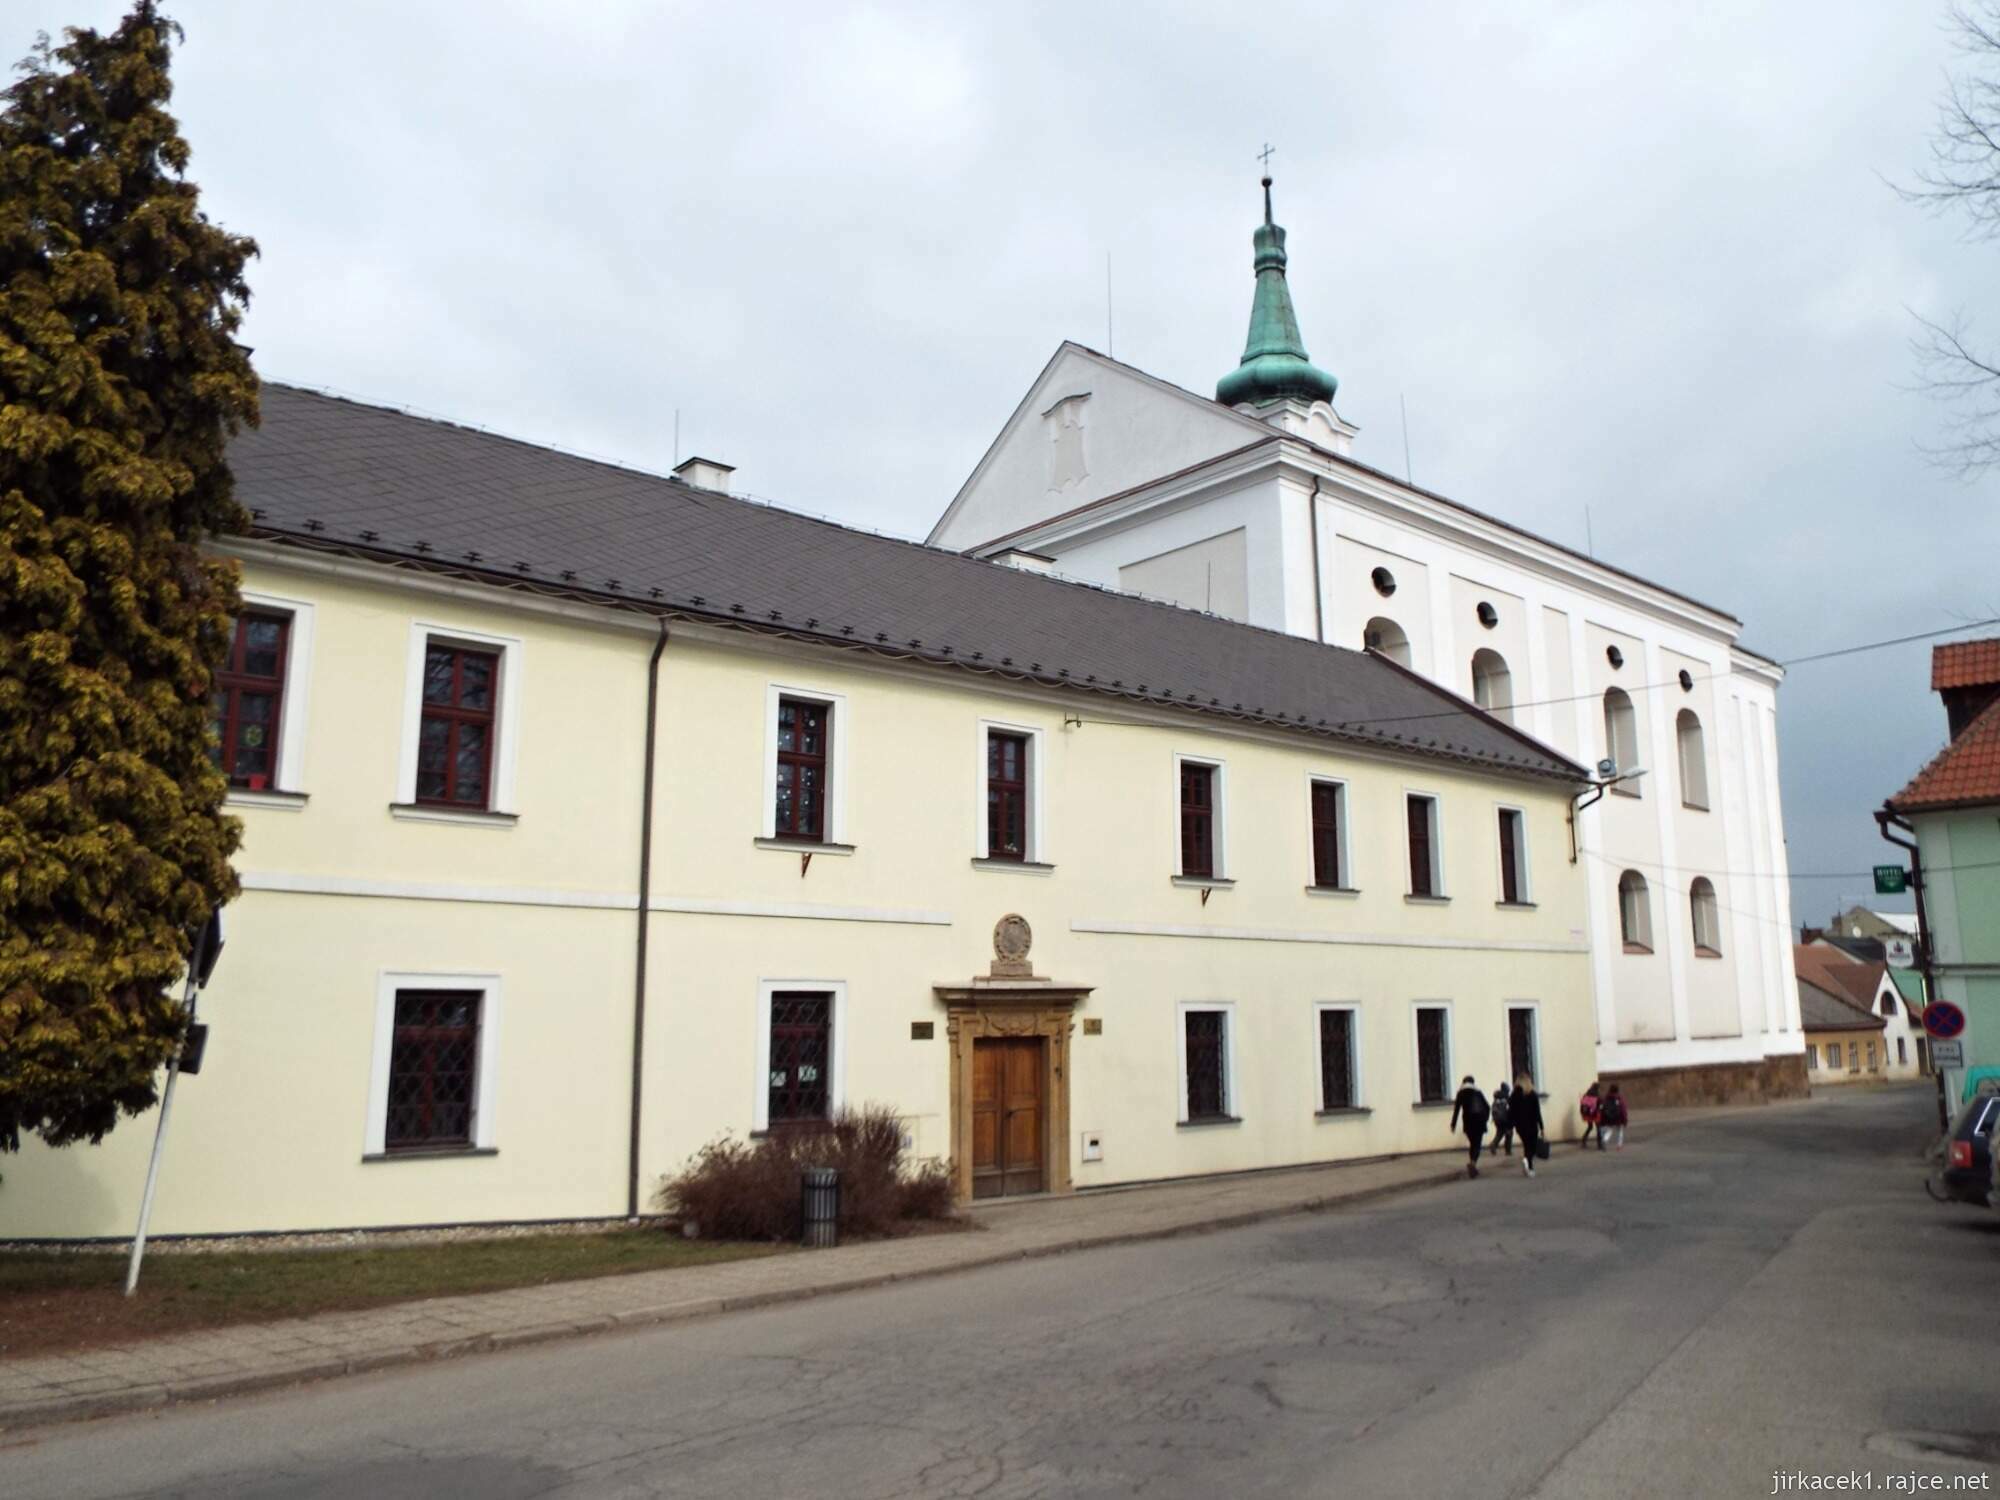 06 - Jevíčko - Kostel Nanebevzetí Panny Marie s klášterem Augustiánů 16